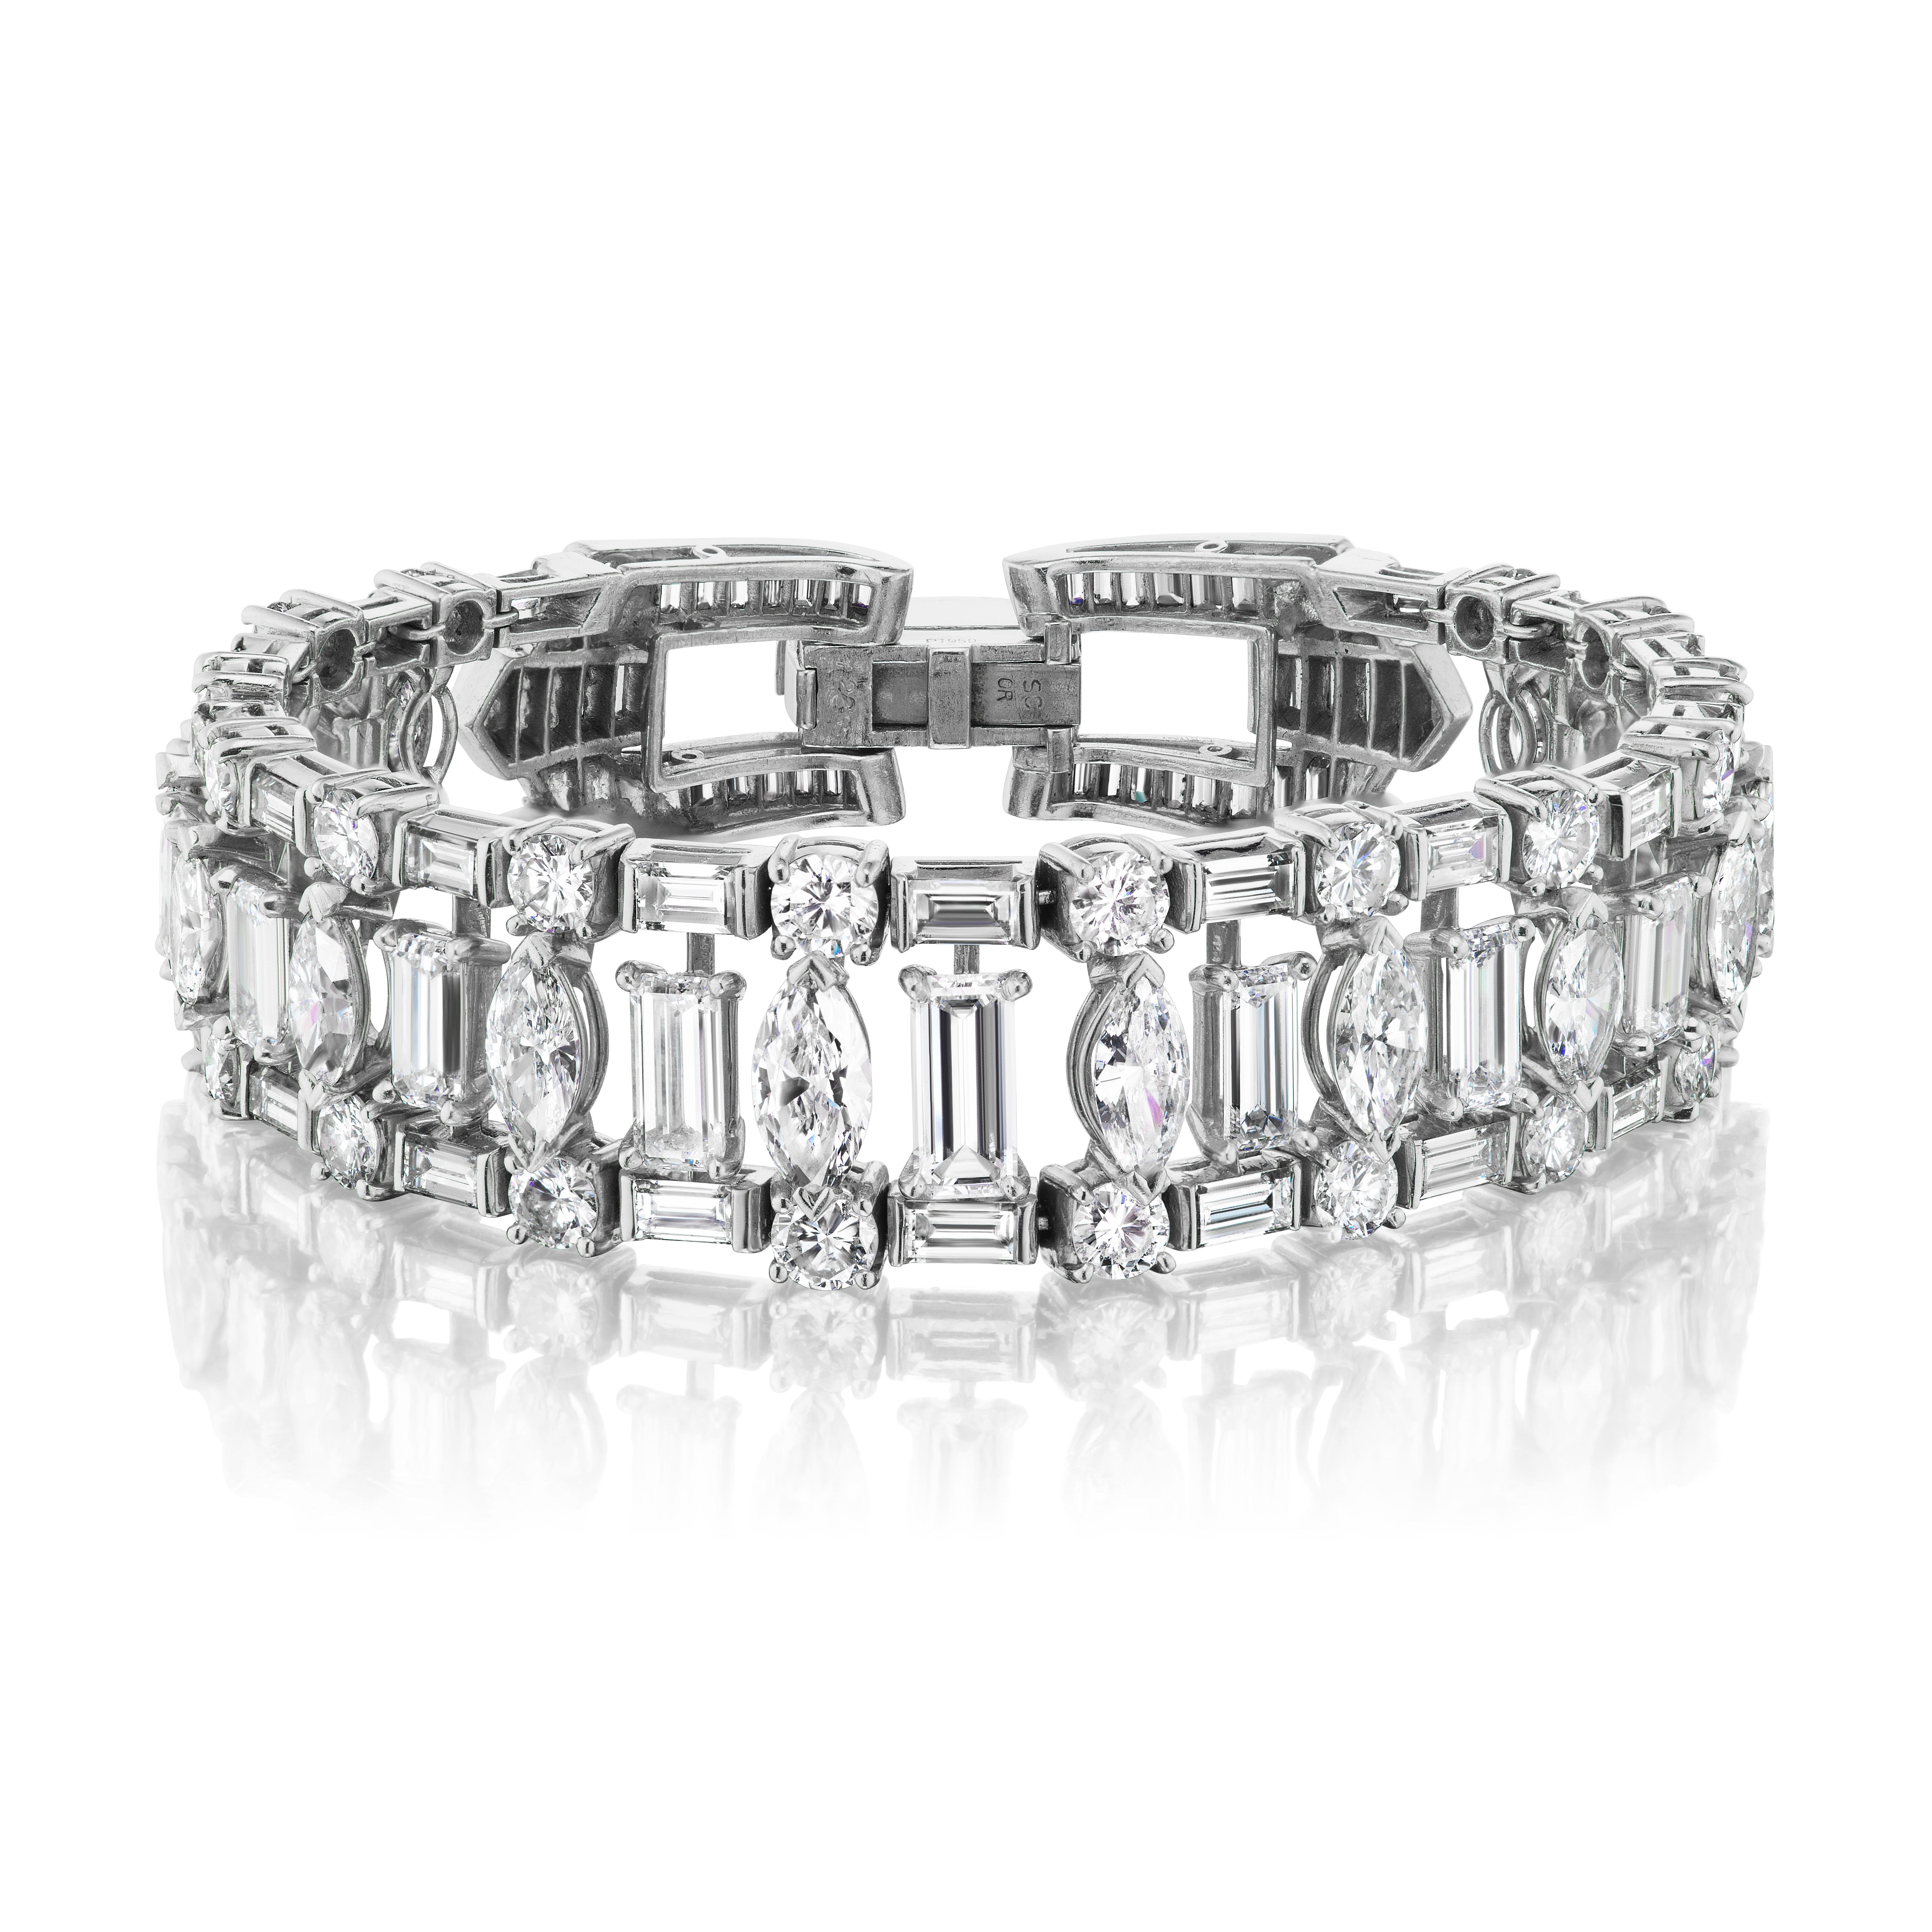 Dieses elegante Armband aus Diamanten und Platin zeichnet sich durch Diamanten im Marquise- und länglichen Smaragdschliff aus, die durch runde Brillanten akzentuiert werden, und hat einen Verschluss in Baguette-Fassung. Dieses außergewöhnliche